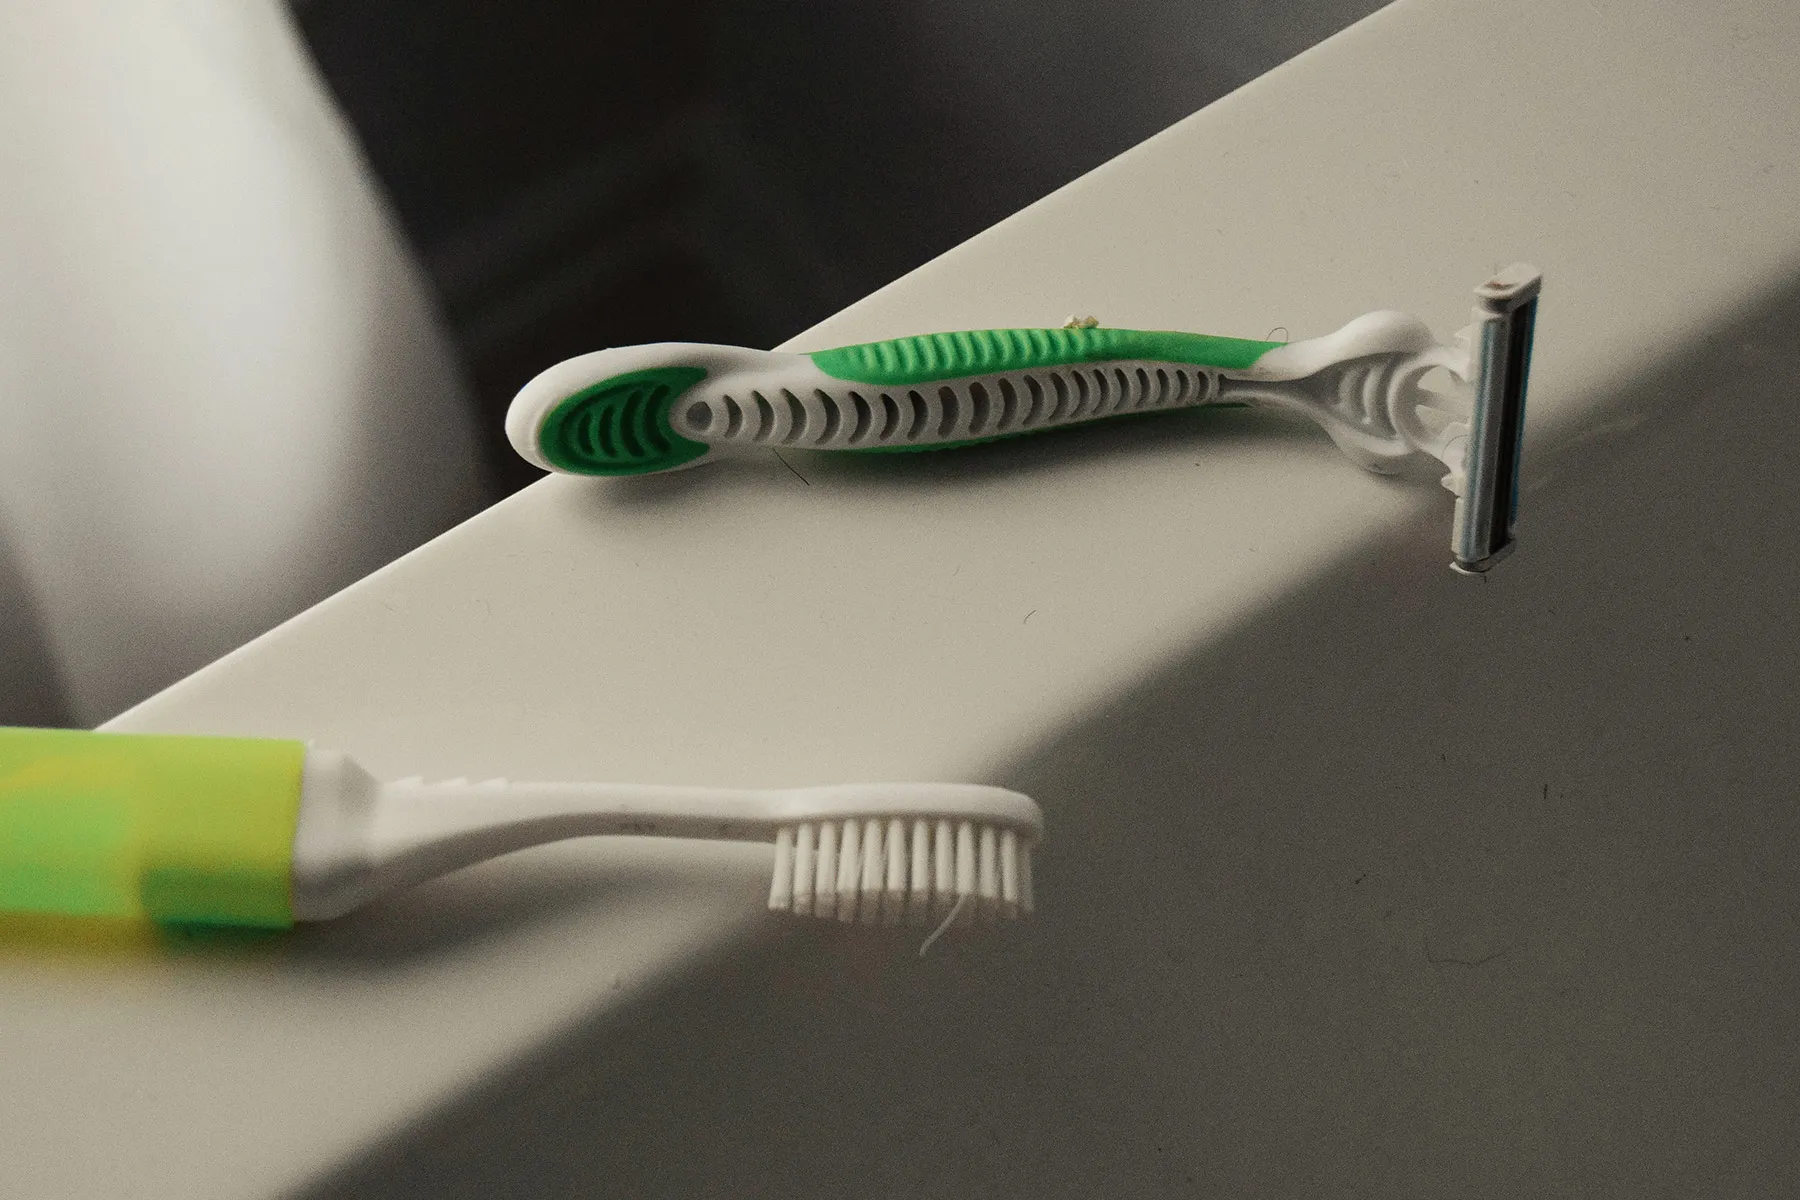 photo of toothbrush and razor